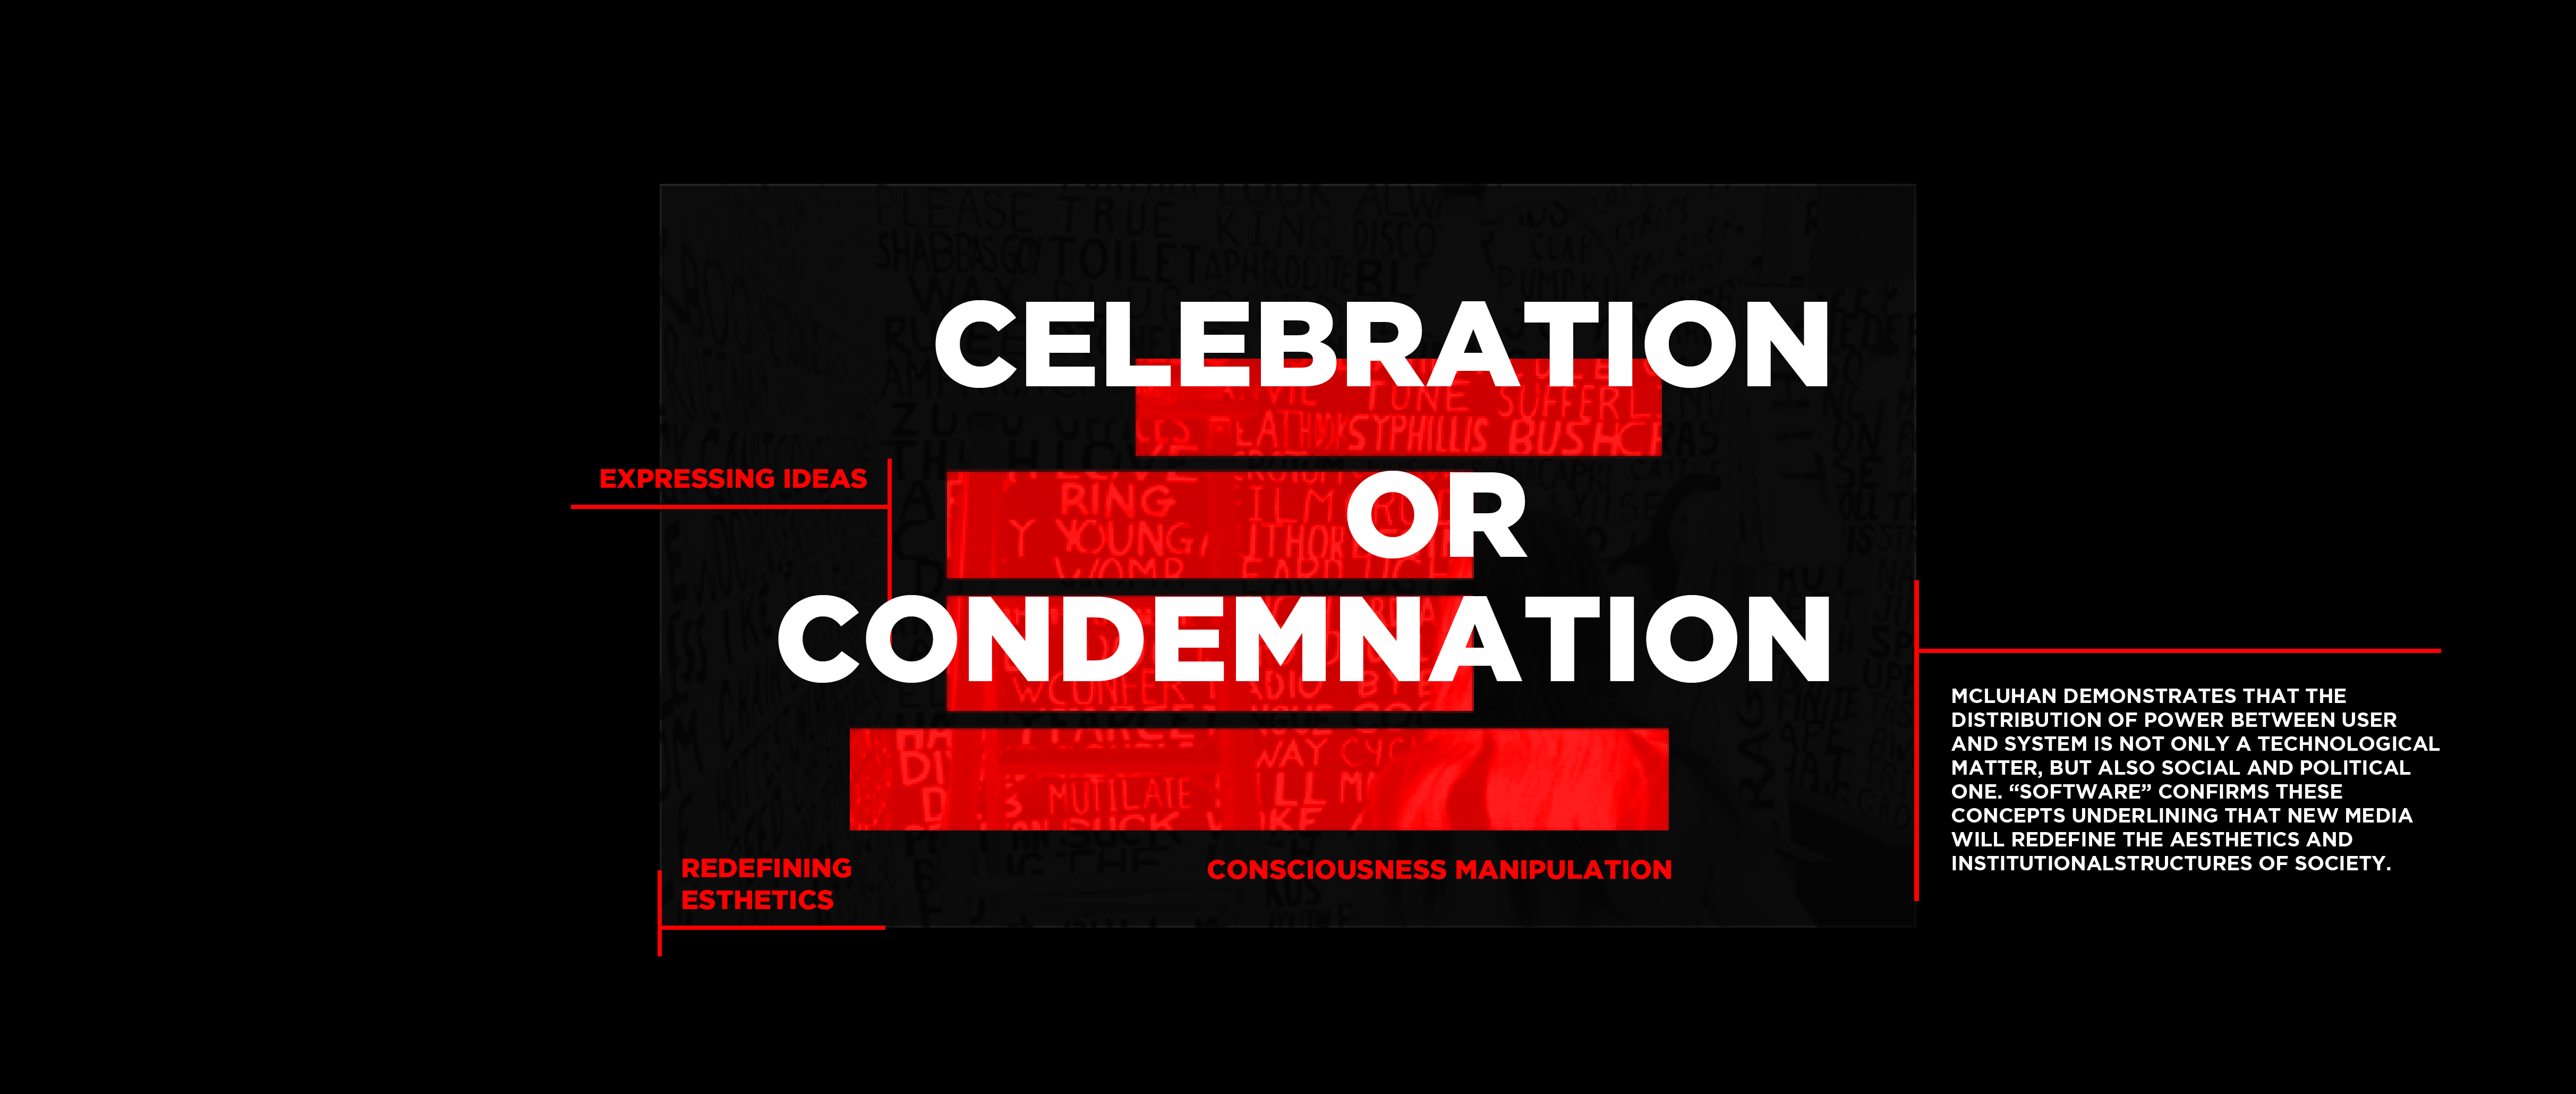 Celebration or condemnation